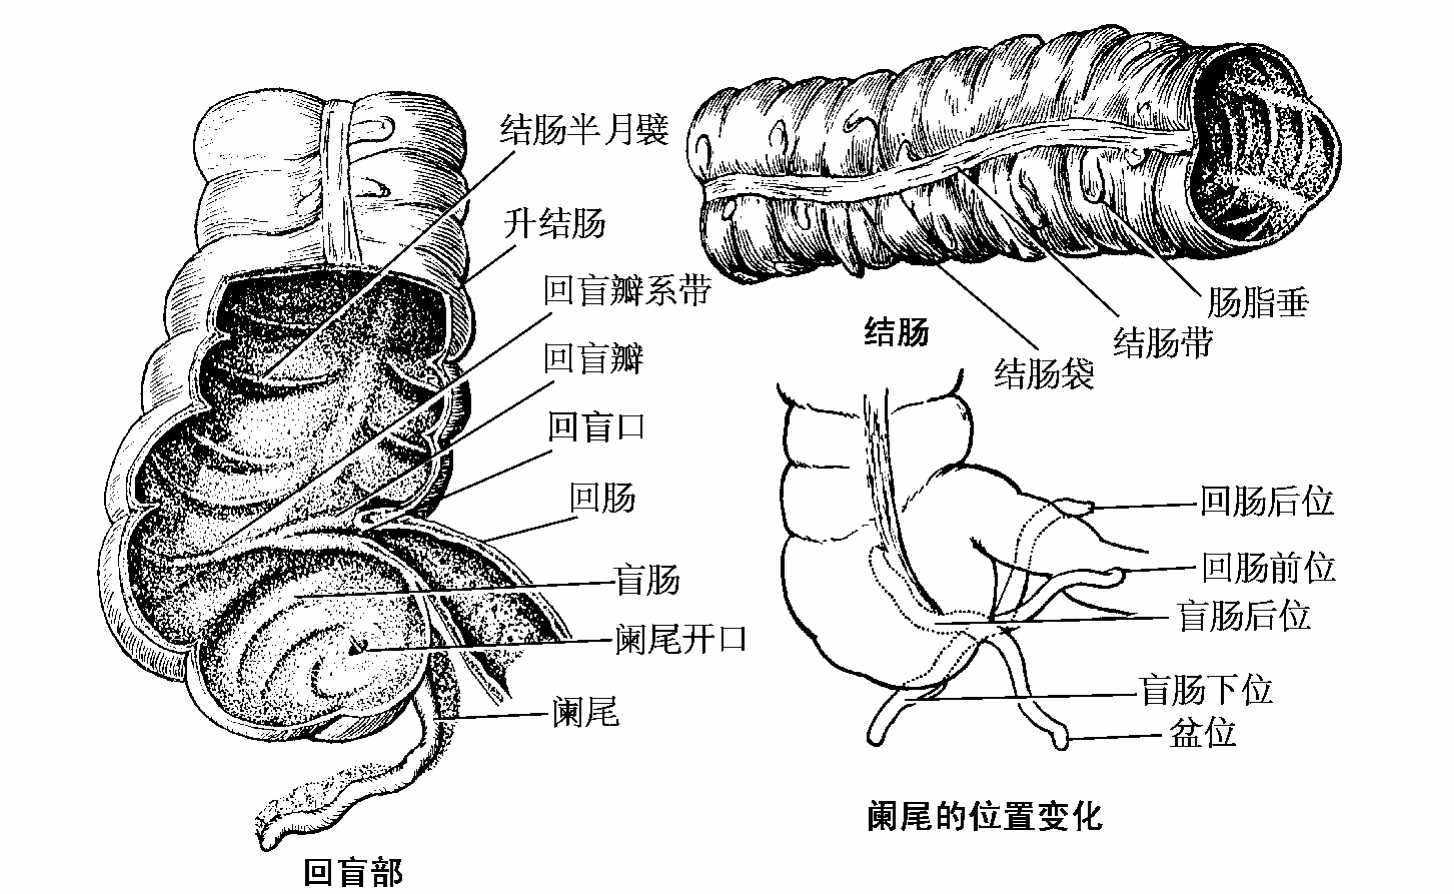 人体阑尾位置示意图-图库-五毛网